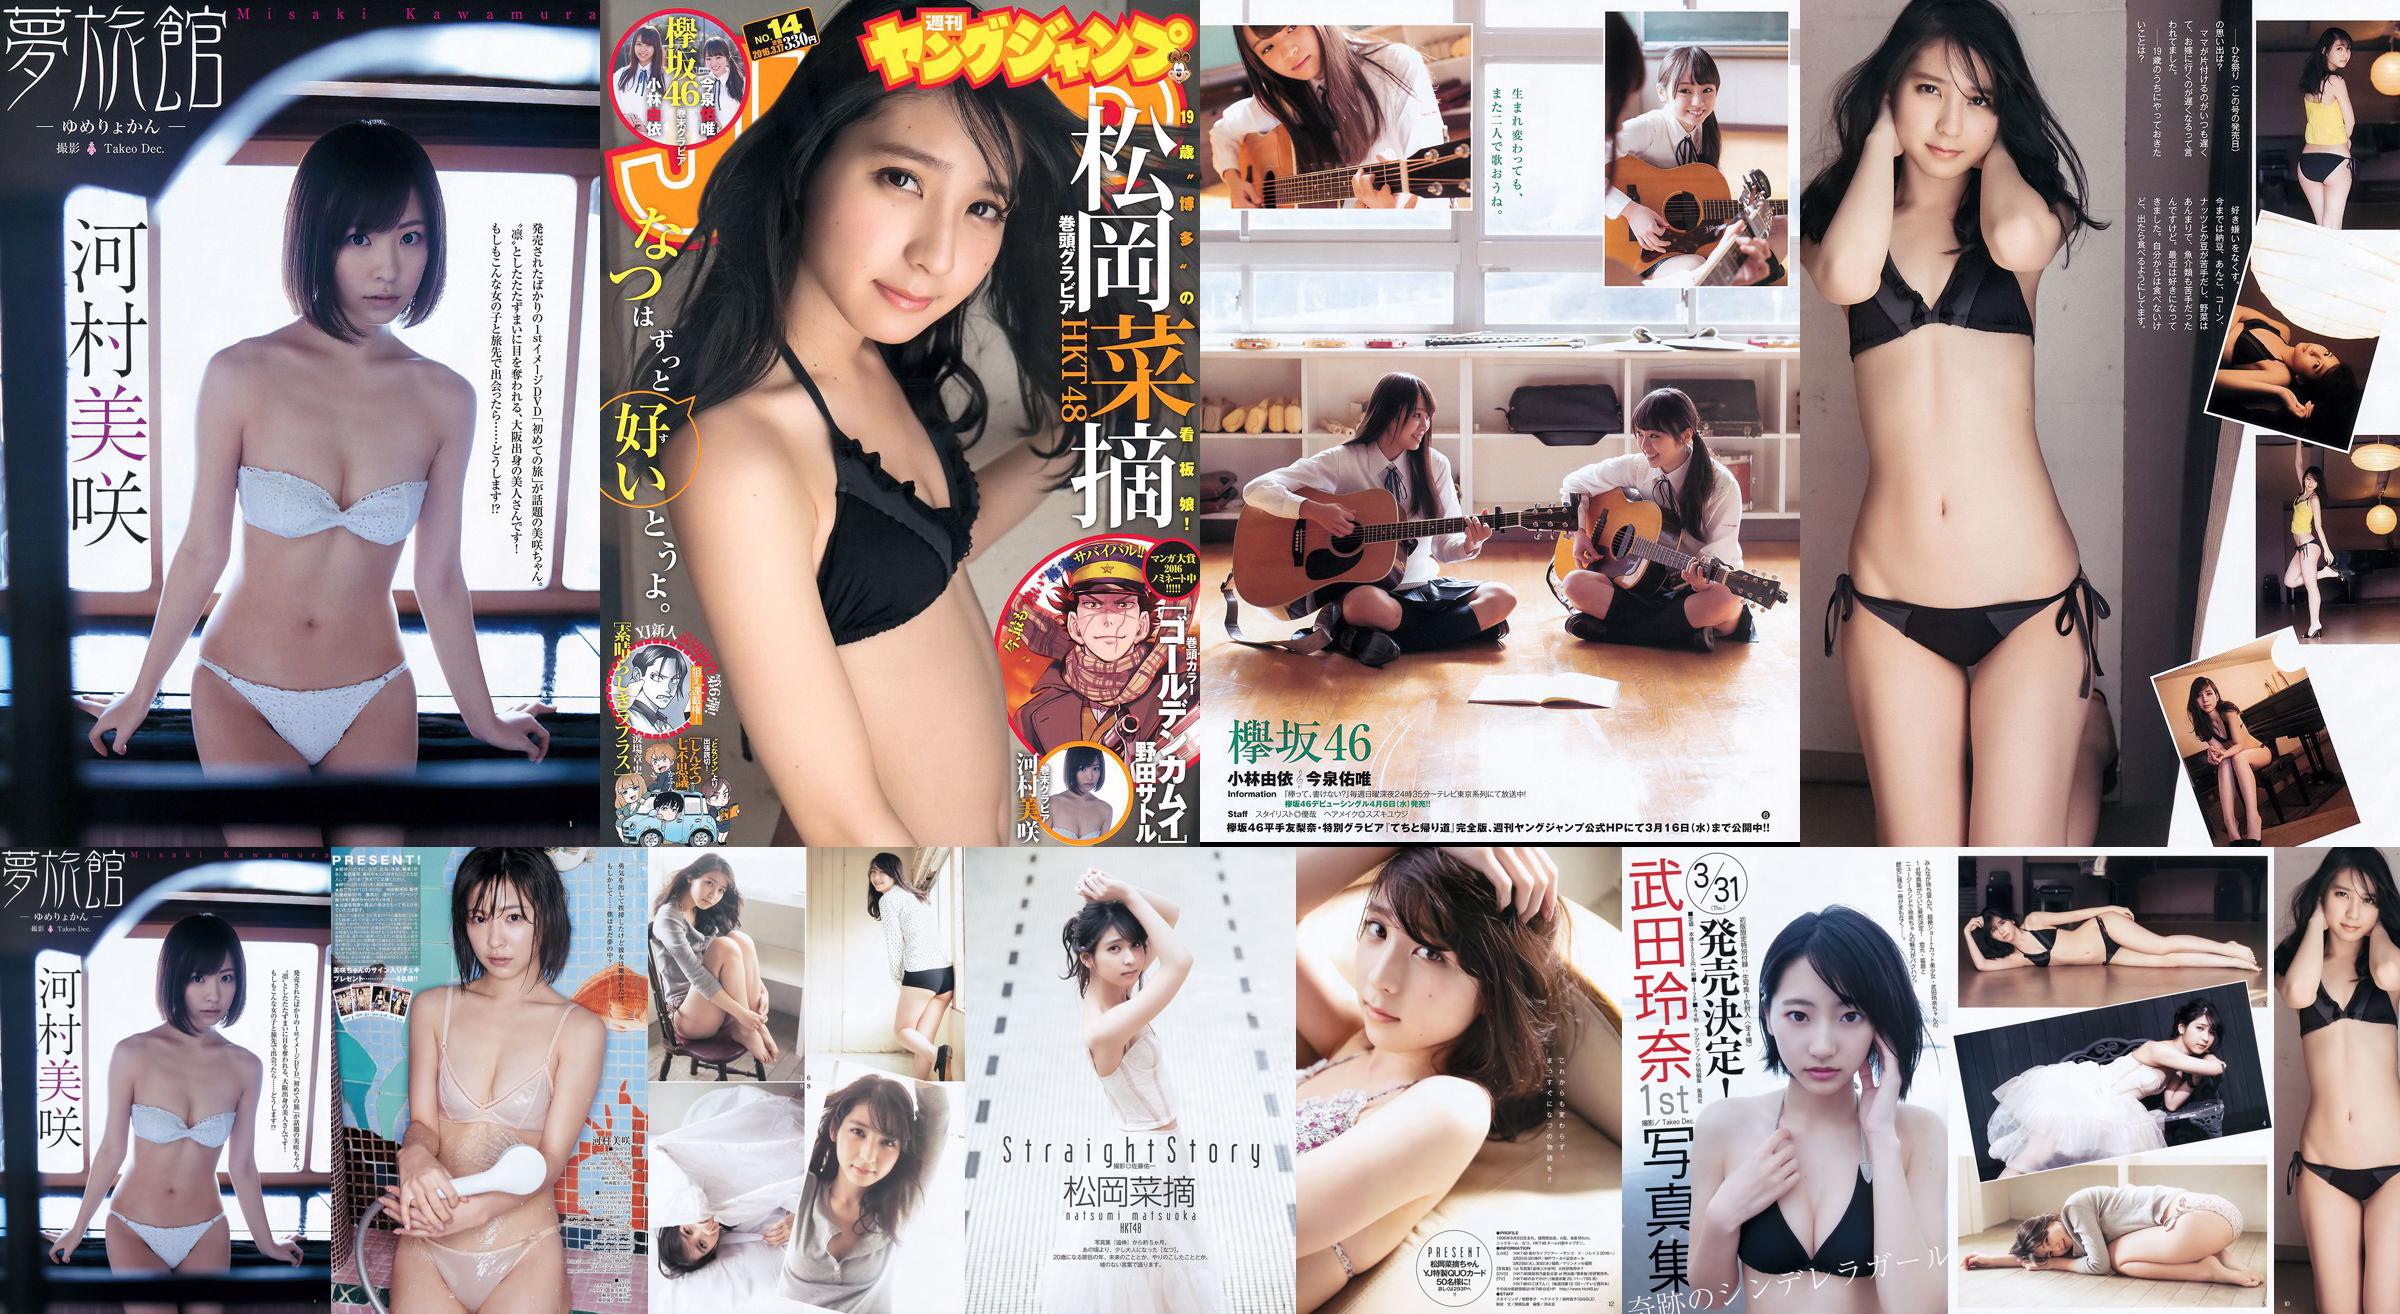 Selecciones de vegetales de Muraoka Yui Kobayashi Yui Imaizumi Misaki Kawamura [Salto joven semanal] Revista fotográfica n. ° 14 de 2016 No.50c188 Página 3